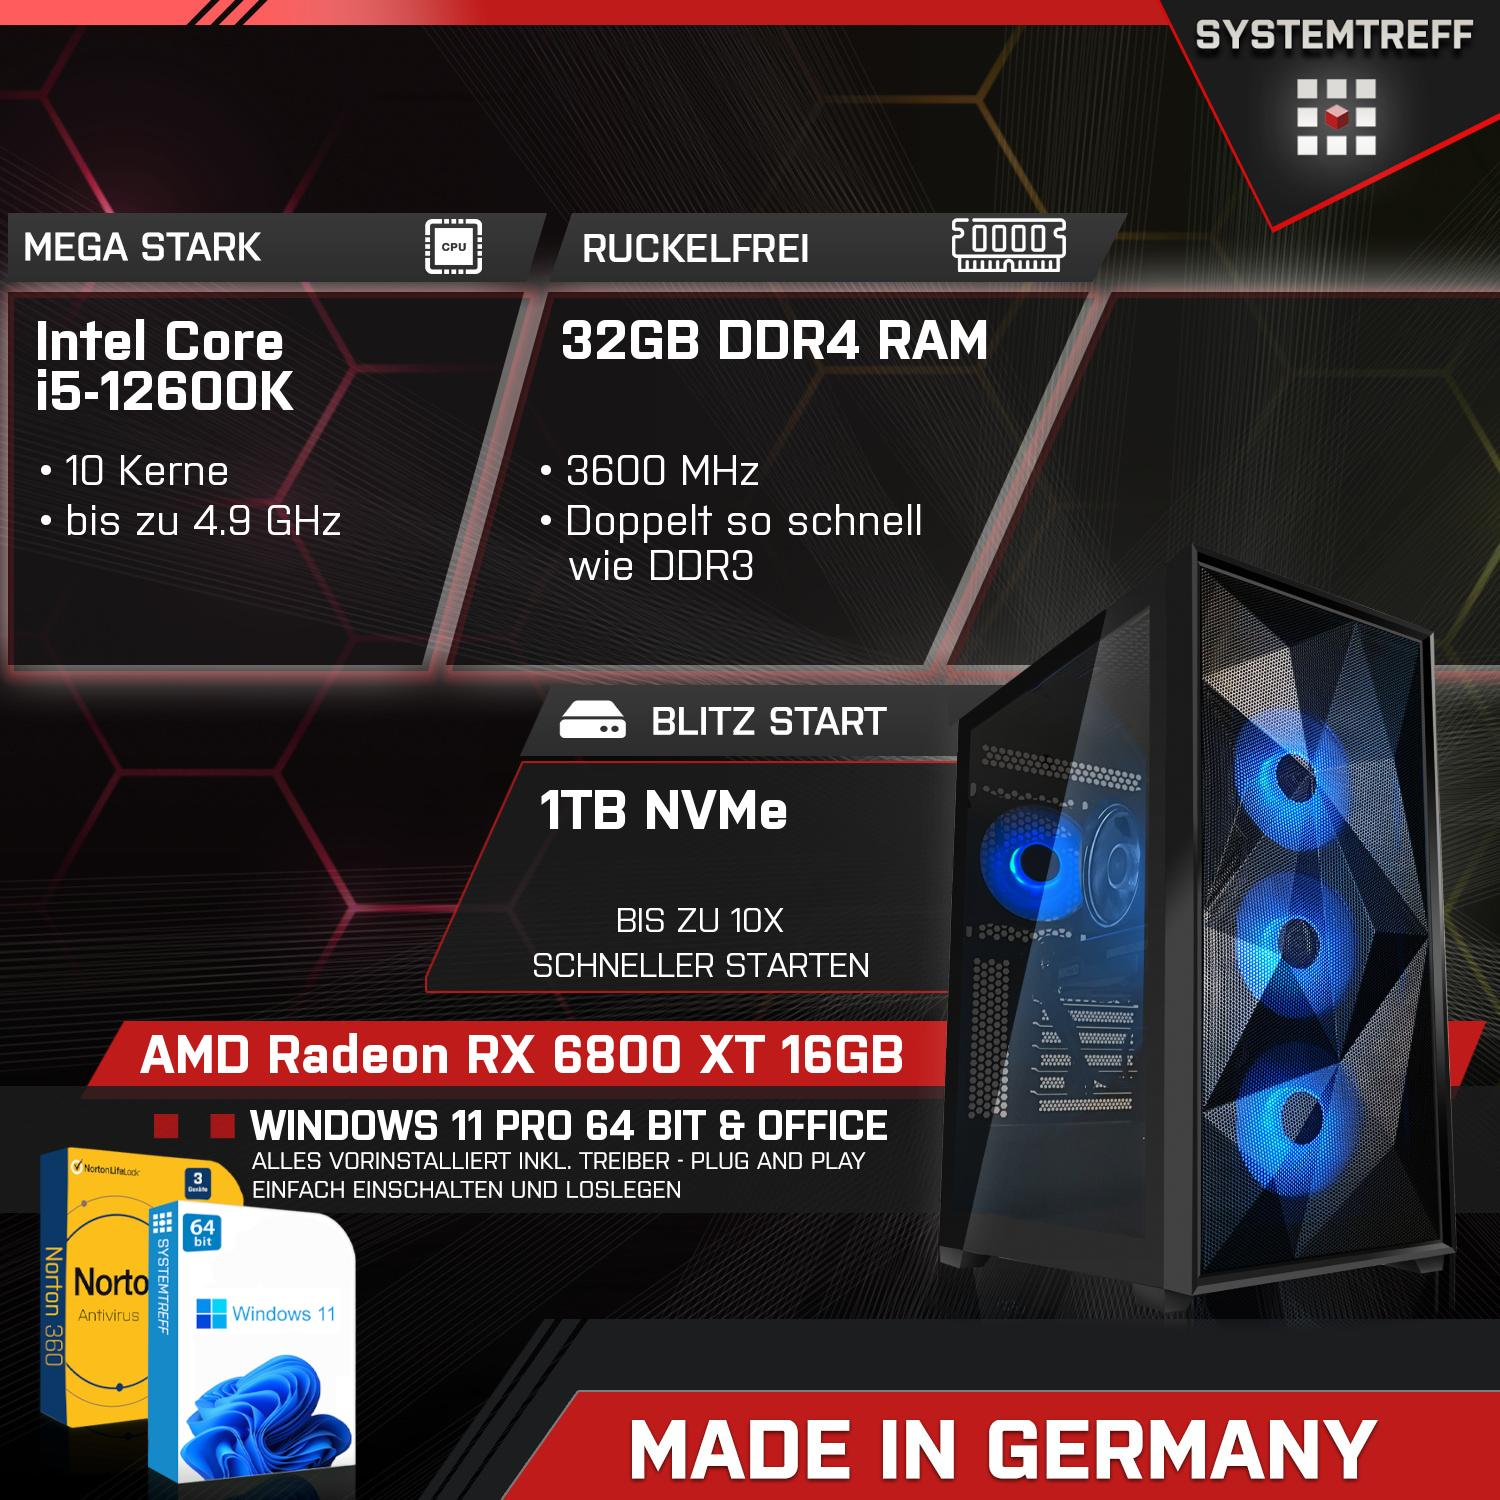 Intel Prozessor, 16GB mSSD, RX XT AMD Radeon Gaming mit GB SYSTEMTREFF GB i5-12600K 16 6800 PC 32 GDDR6, Core RAM, GB Komplett i5-12600K, Komplett 1000